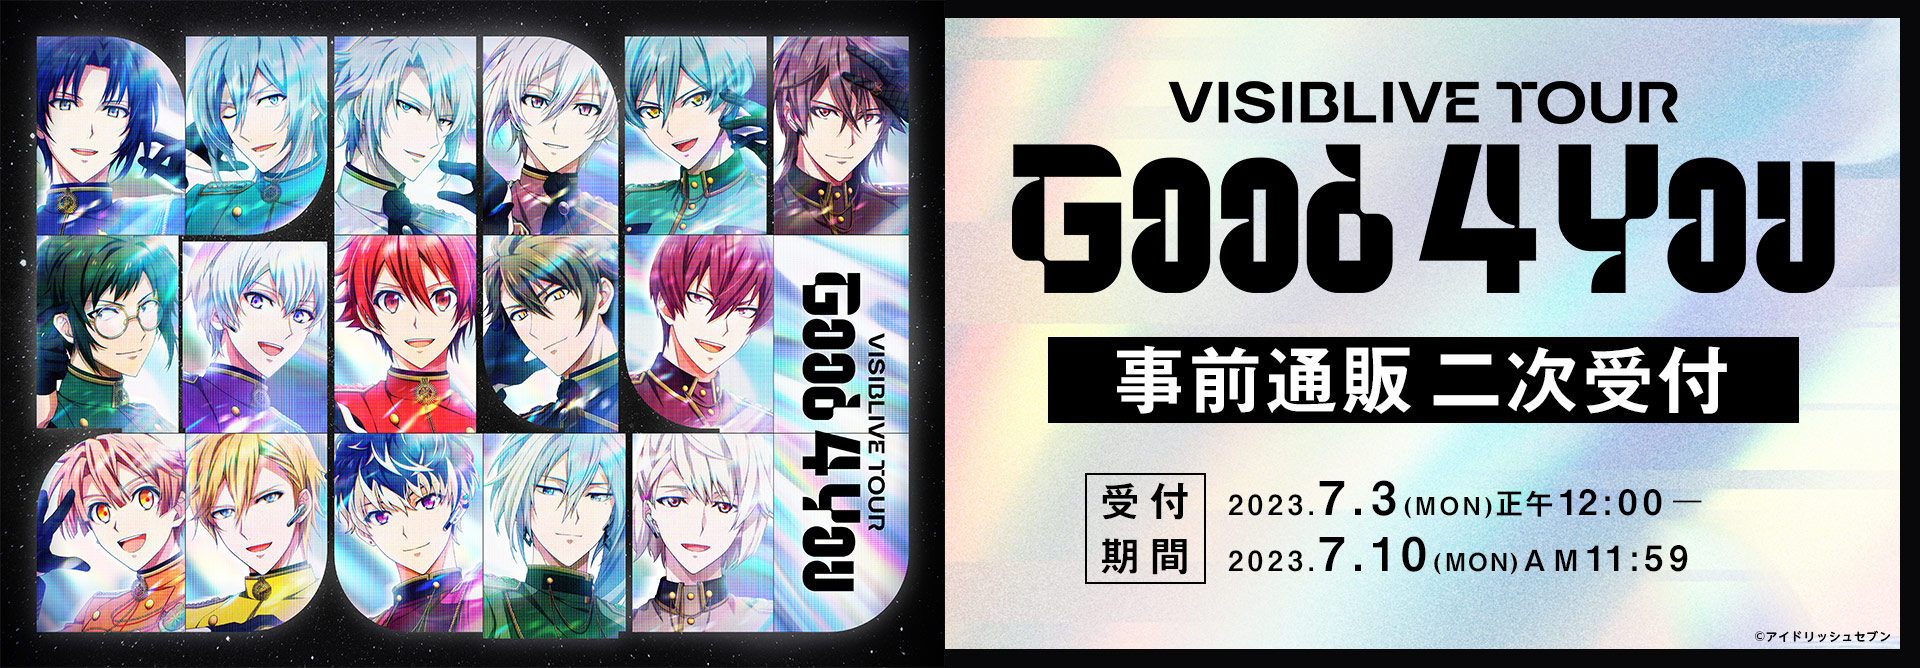 アイドリッシュセブン VISIBLIVE TOUR "Good 4 You"事前通販二次受付